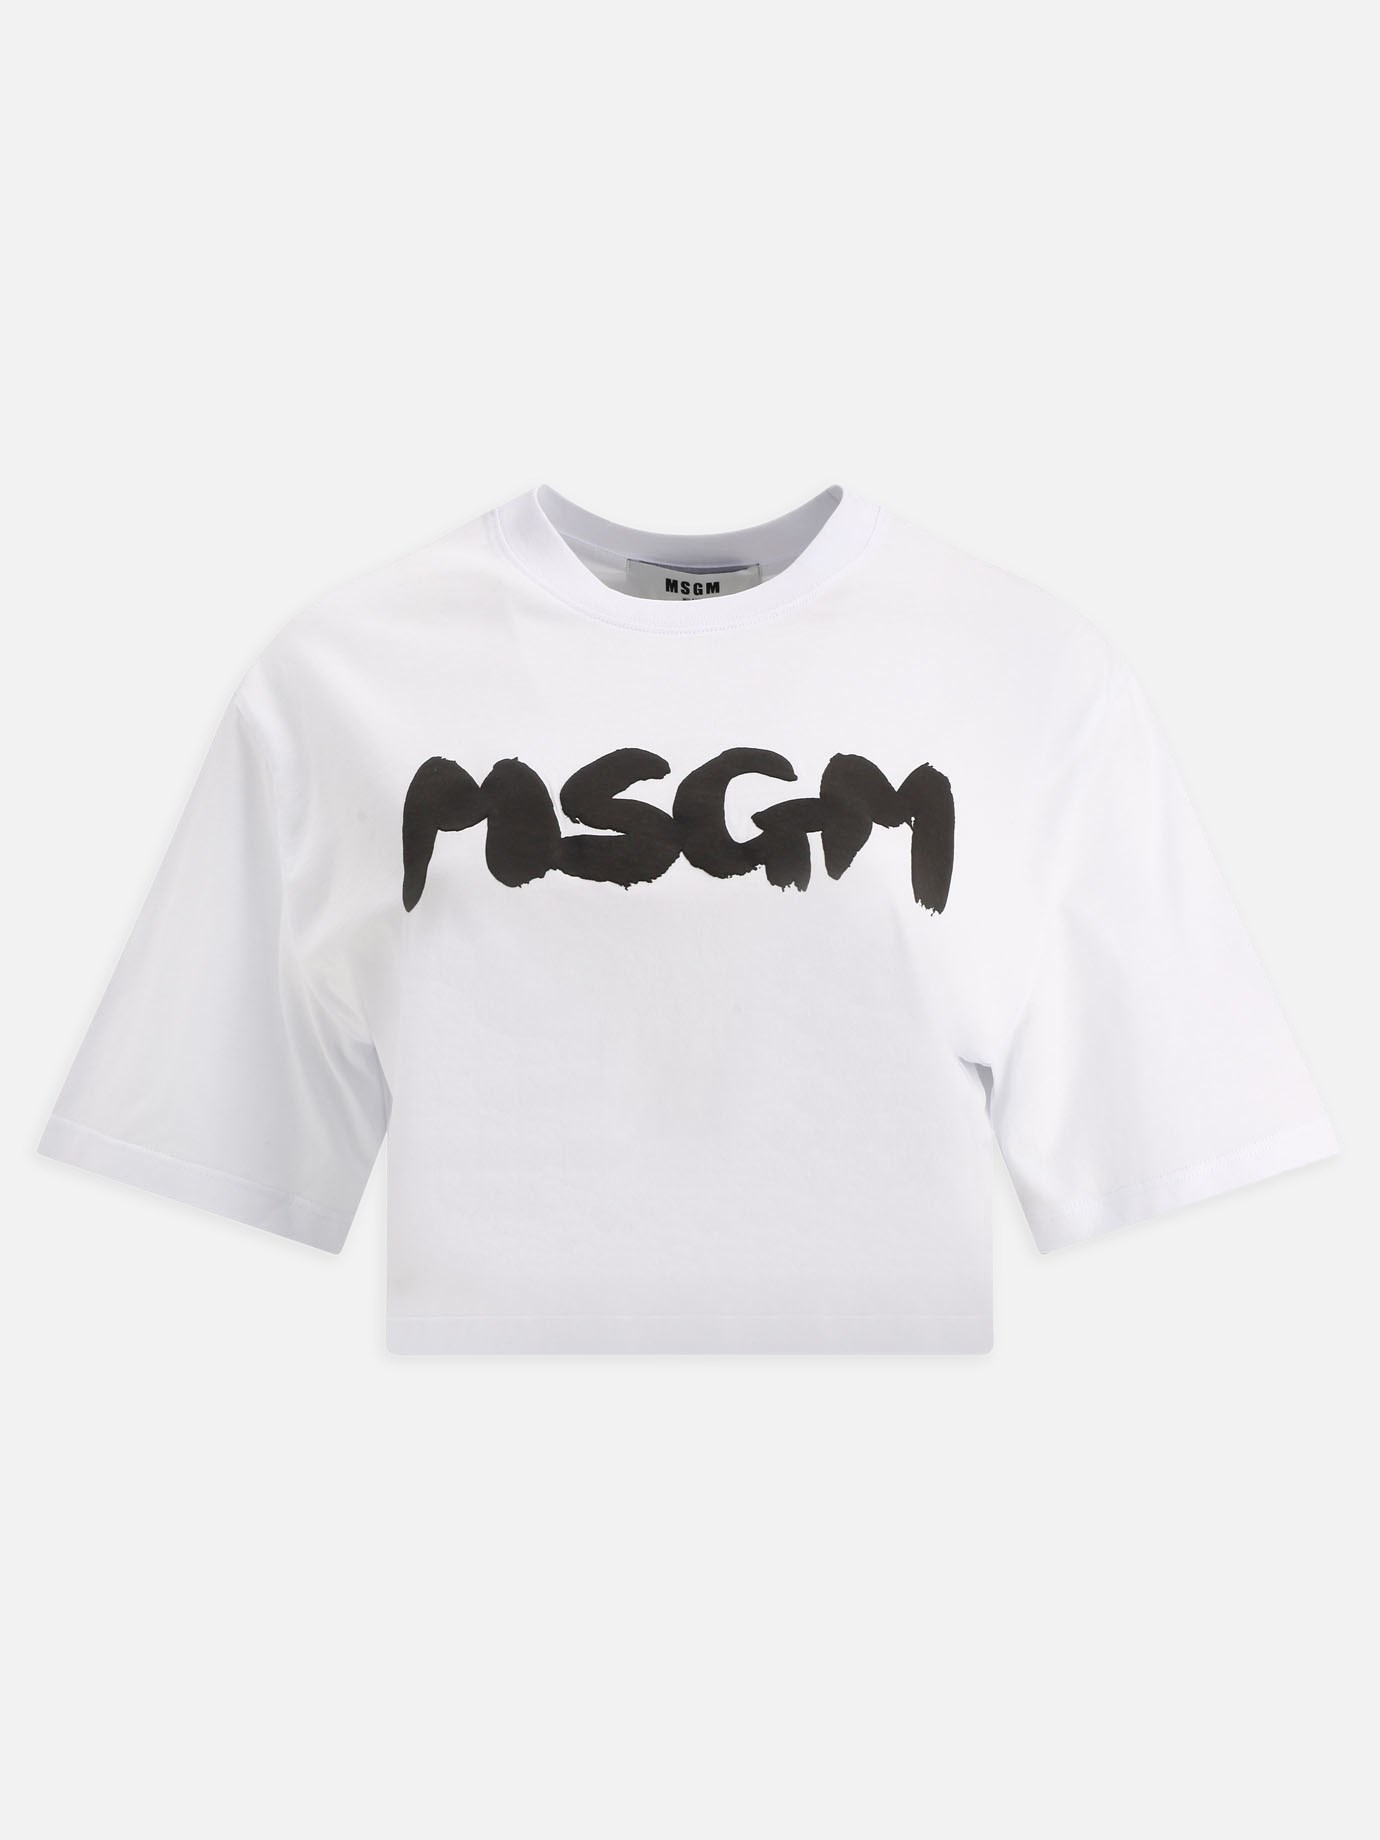  Msgm  cropped t-shirtby Msgm - 2